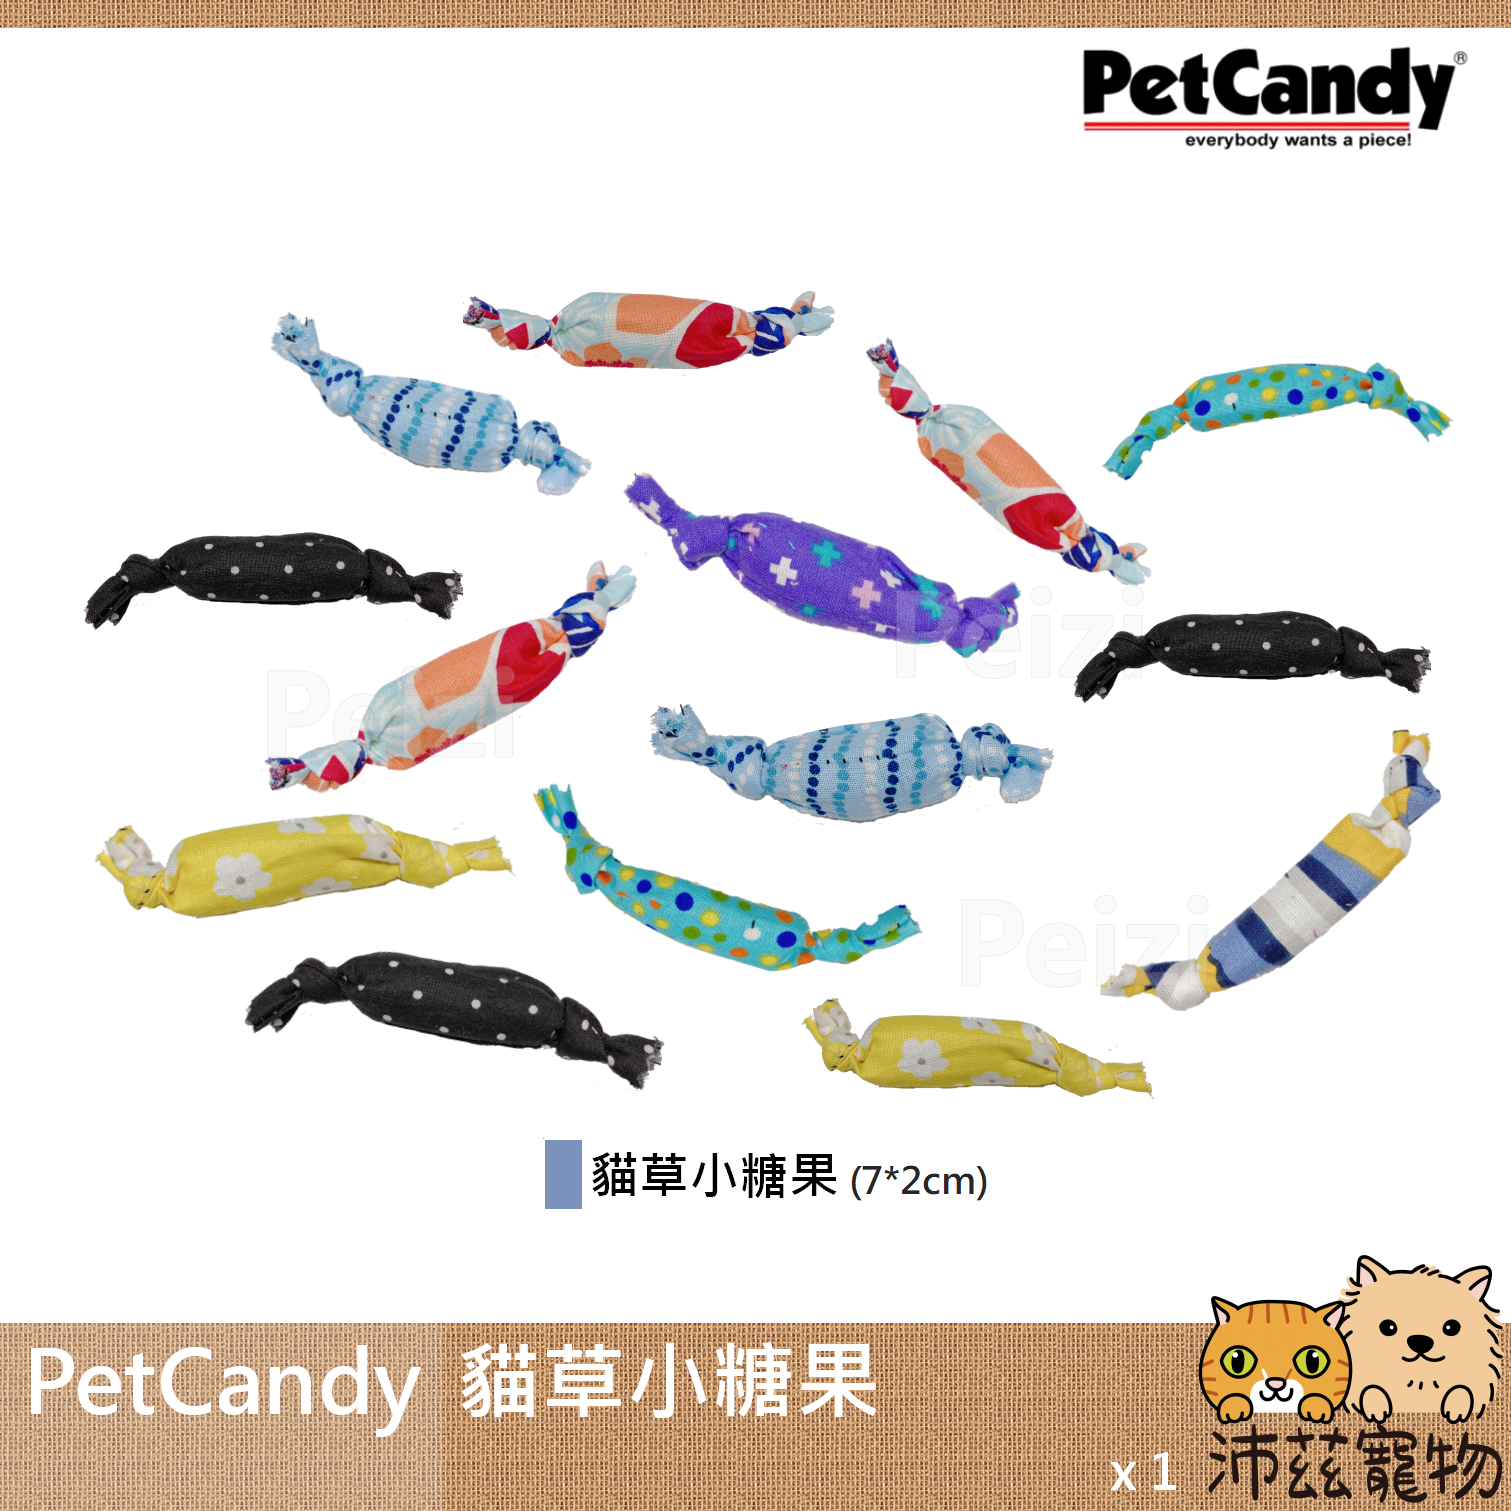 【PetCandy 貓草小糖果】Pet Candy 貓草玩具 美國 貓草 貓玩具 貓 玩具